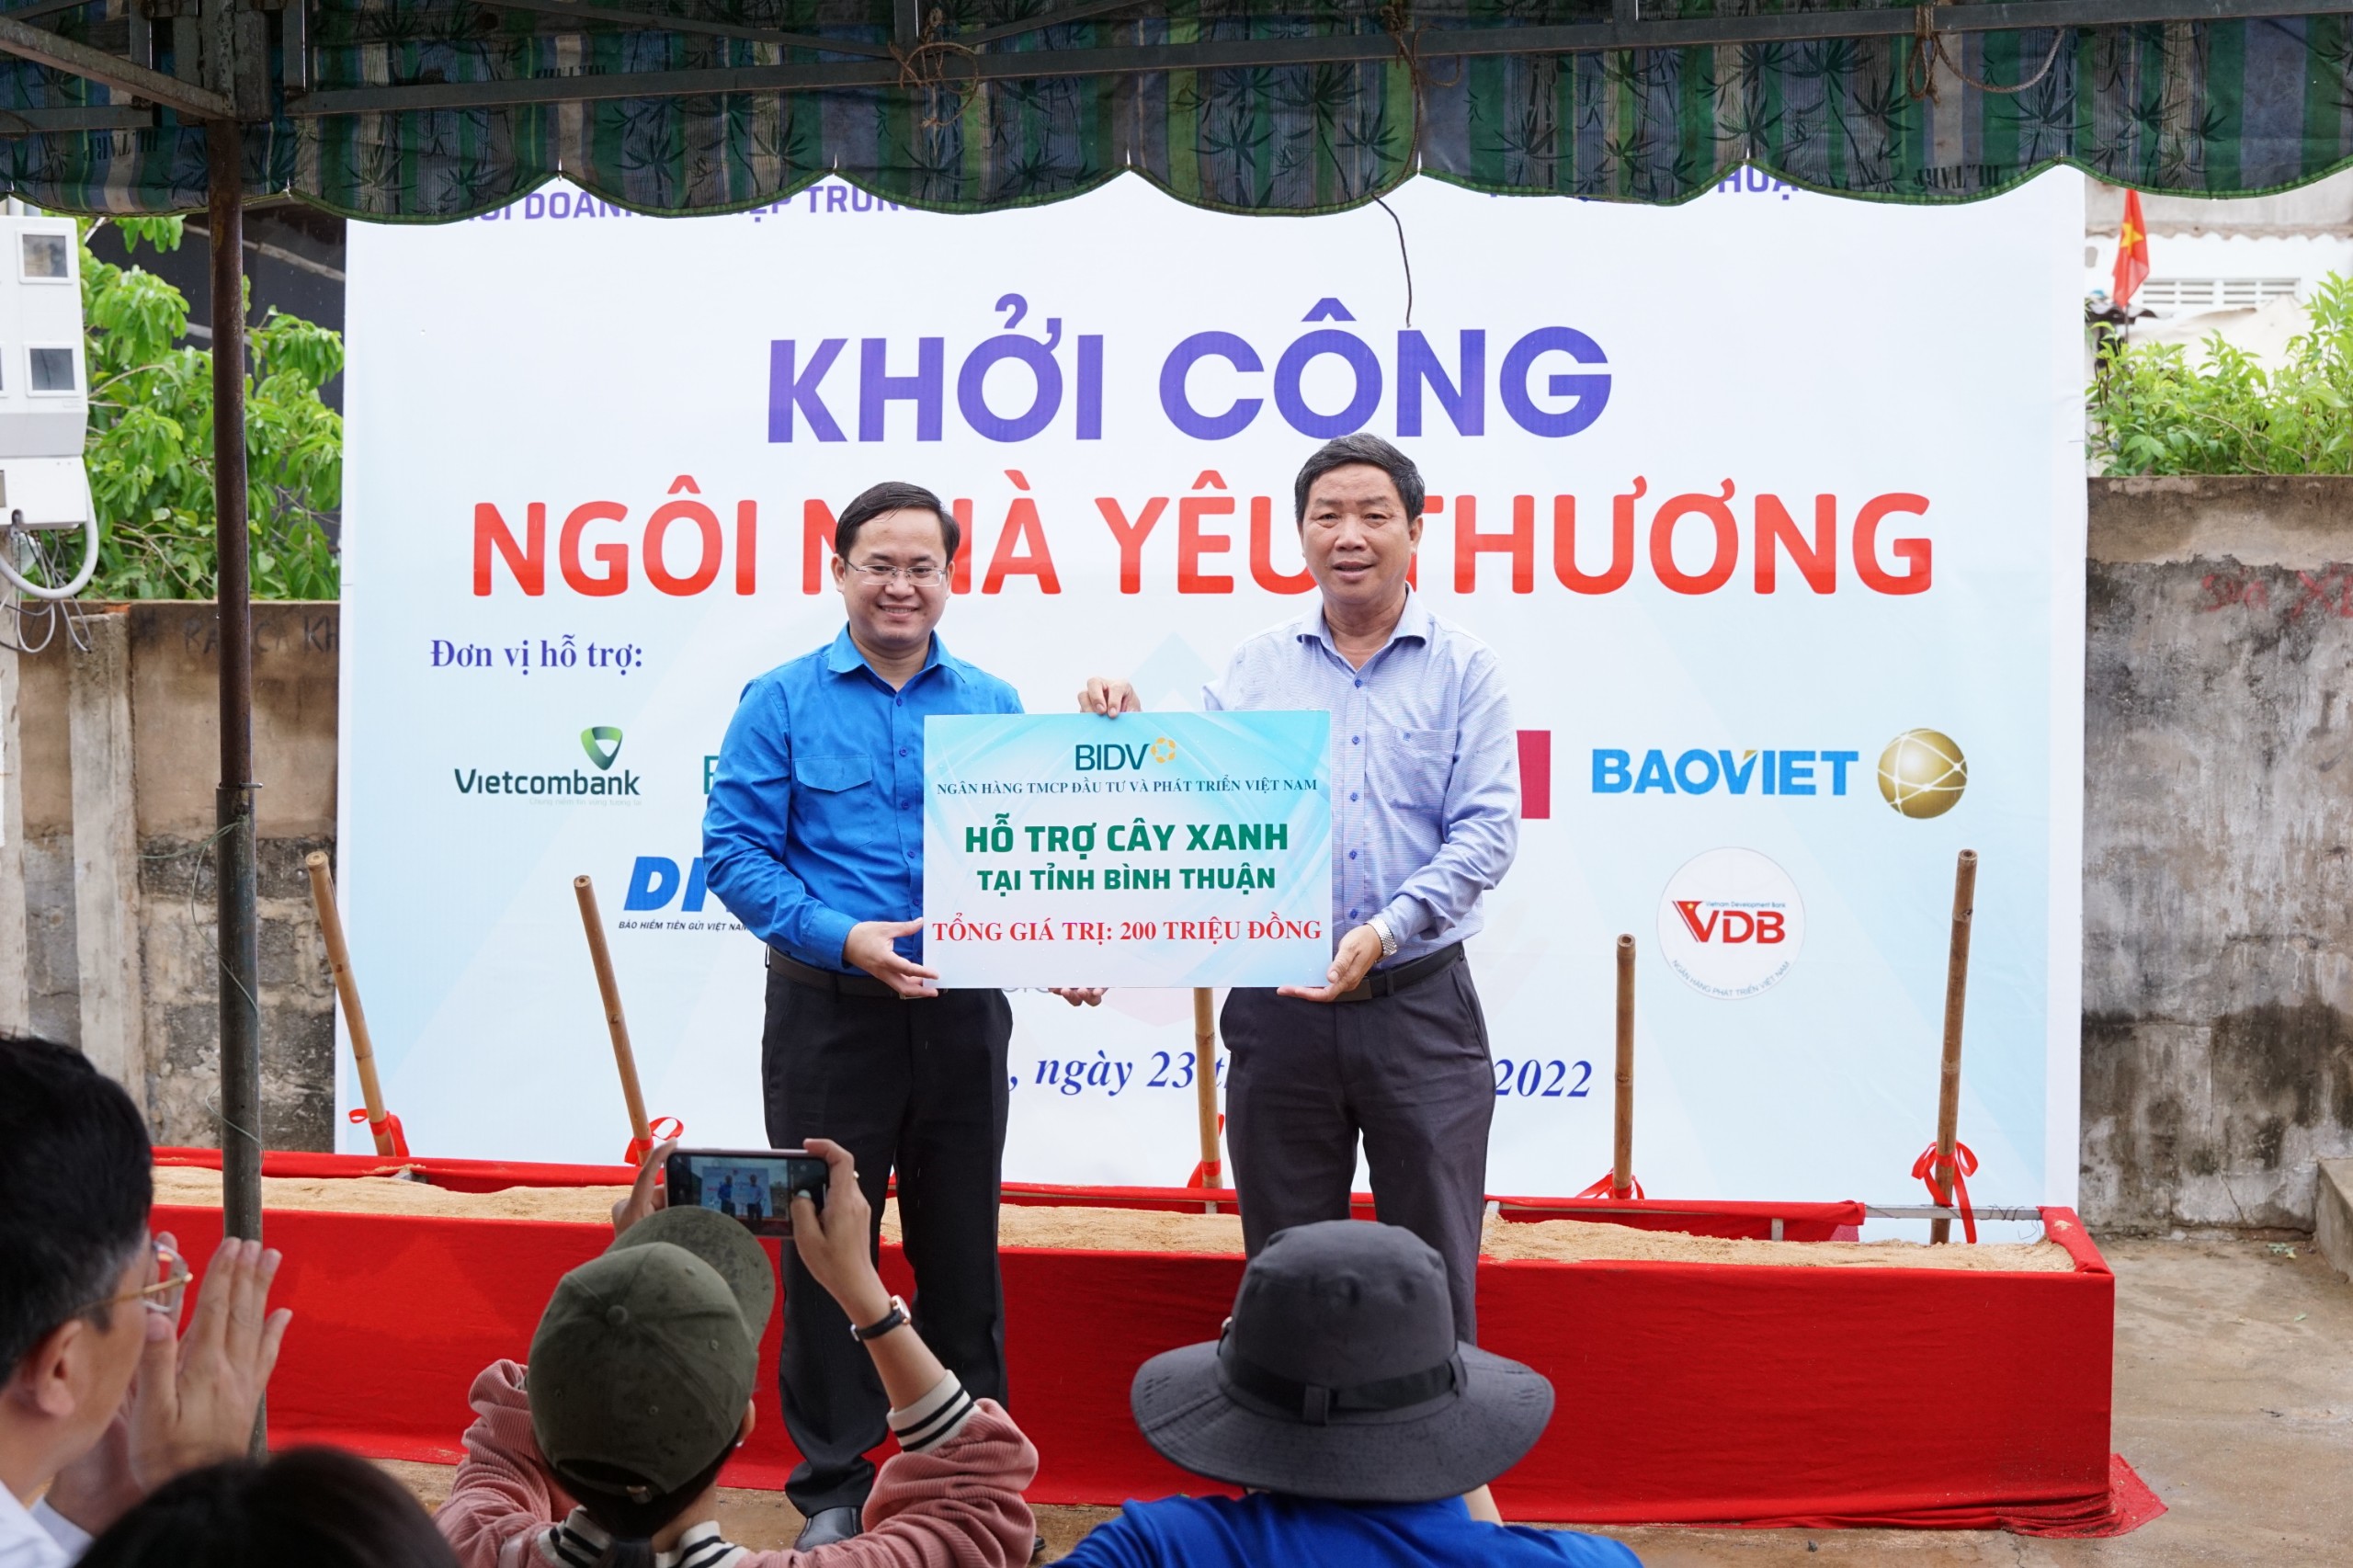 Ông Đinh Tuấn Khôi, Giám đốc Chi nhánh Ngân hàng TMCP Đầu tư và phát triển Việt Nam BIDV thừa uỷ quyền của ban lãnh đạo Ngân hàng BIDV trao tặng bảng hỗ trợ 16.000 cây xanh với tổng kinh phí 200 triệu đồng cho Tỉnh đoàn Bình Thuận.